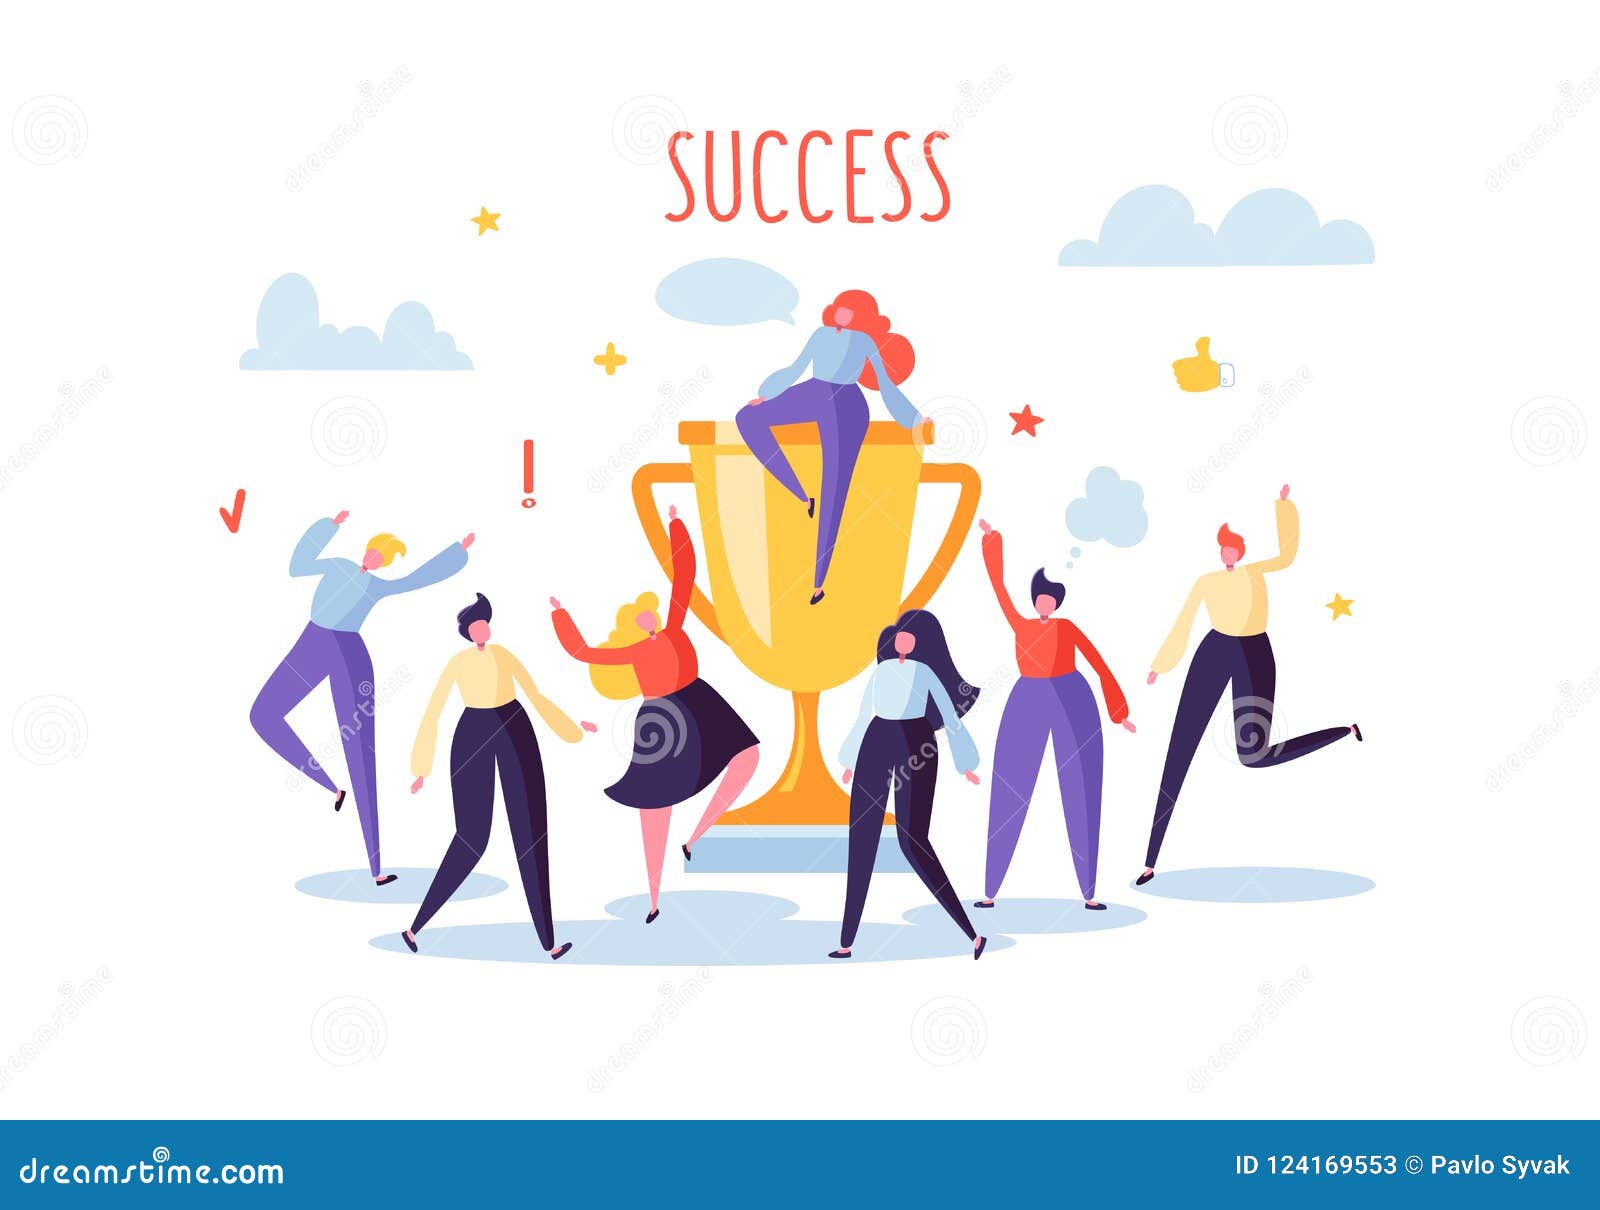 Business Team Success, Achievement Concept. Flat People ...
 Office Team Celebration